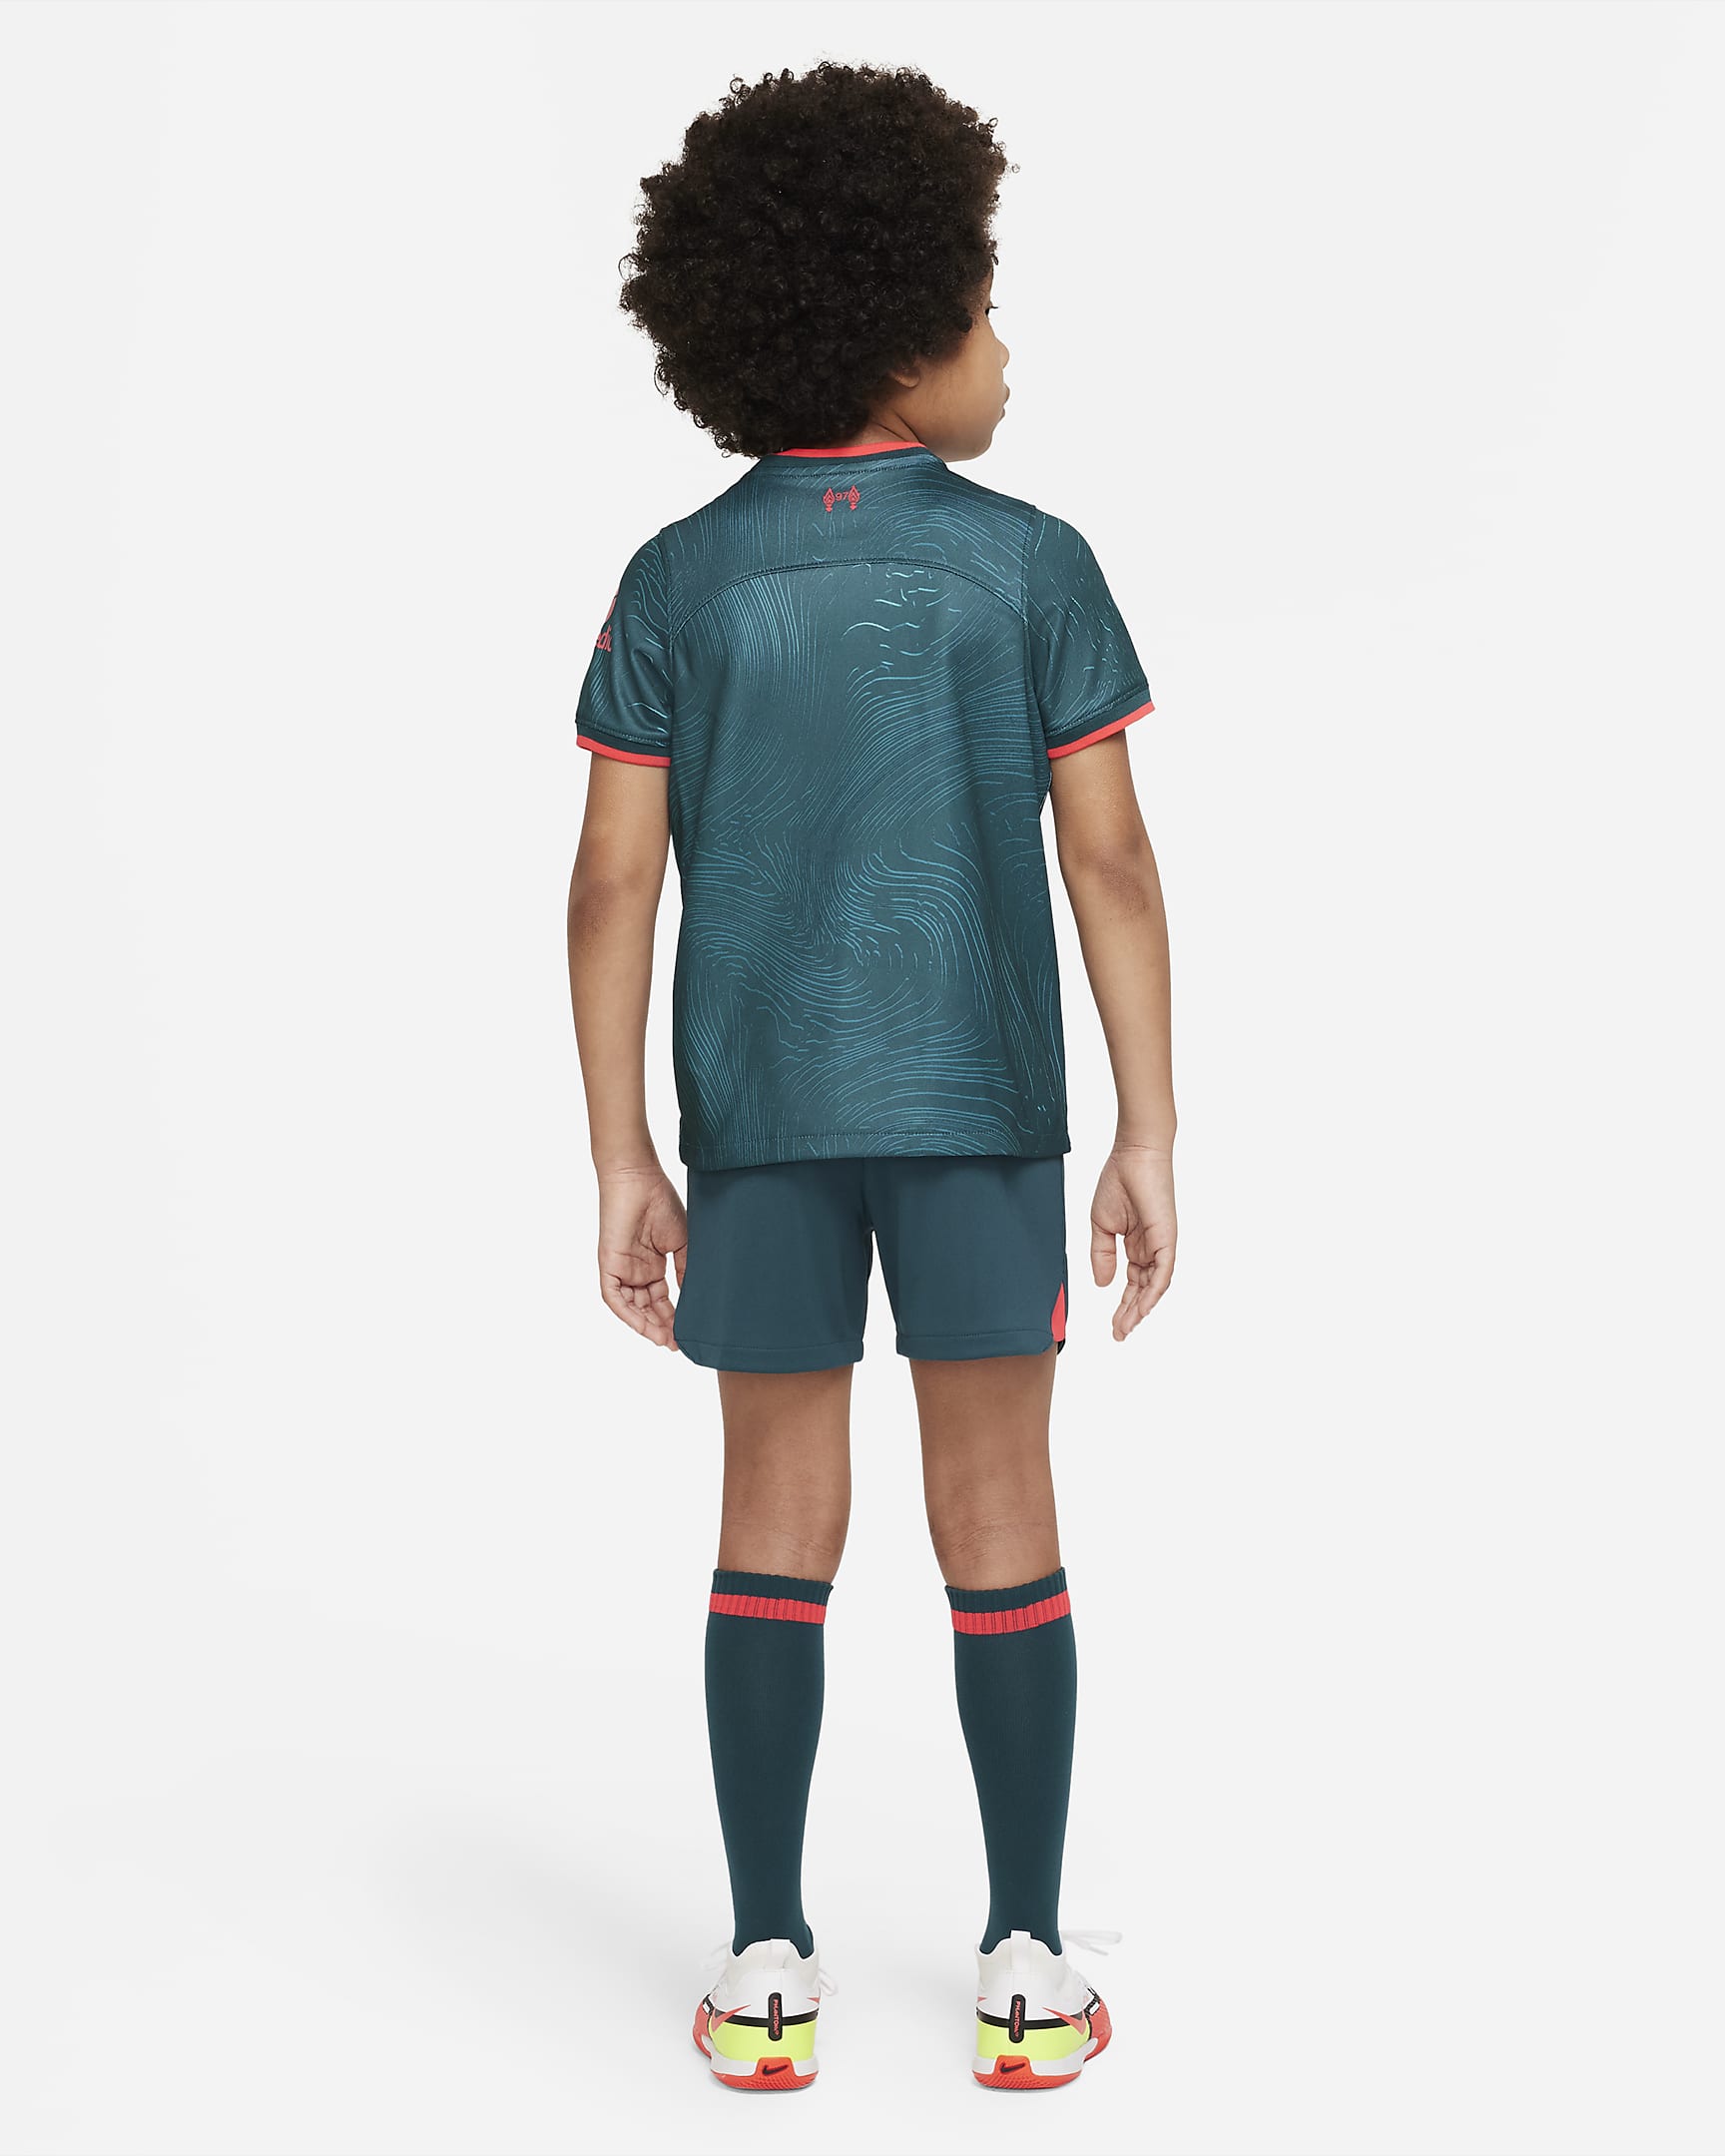 Liverpool F.C. 2022/23 Third Younger Kids' Nike Football Kit. Nike UK